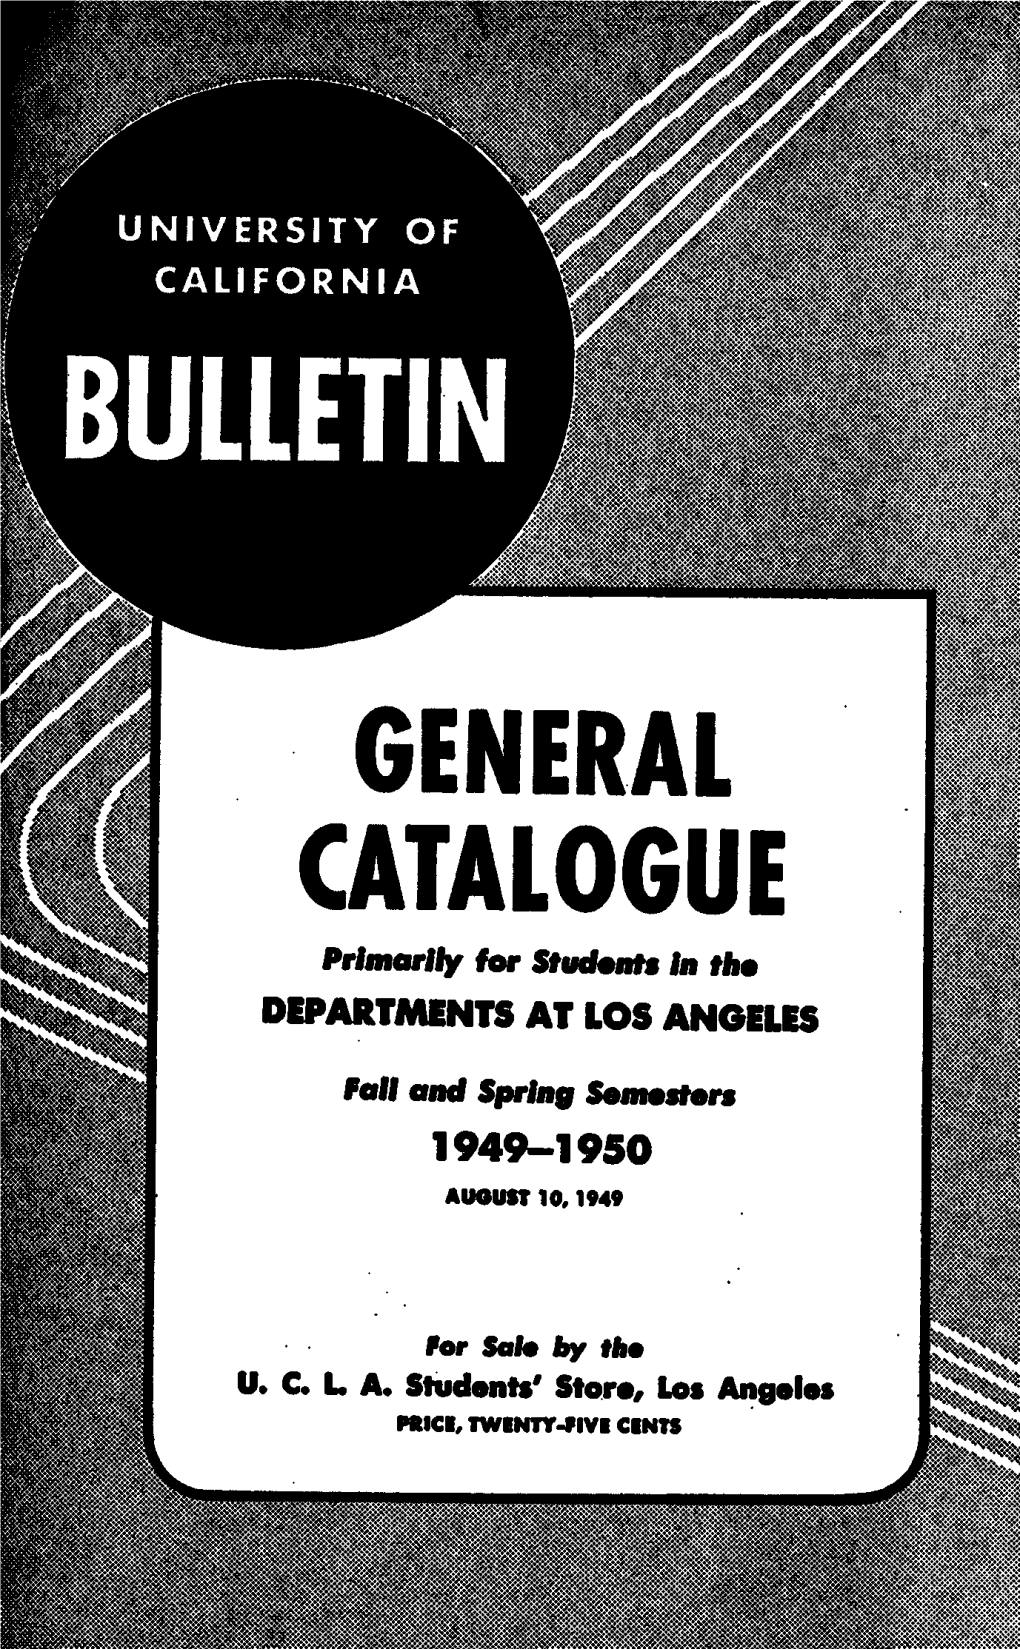 University of California Bulletin General Catalogue 1949-50